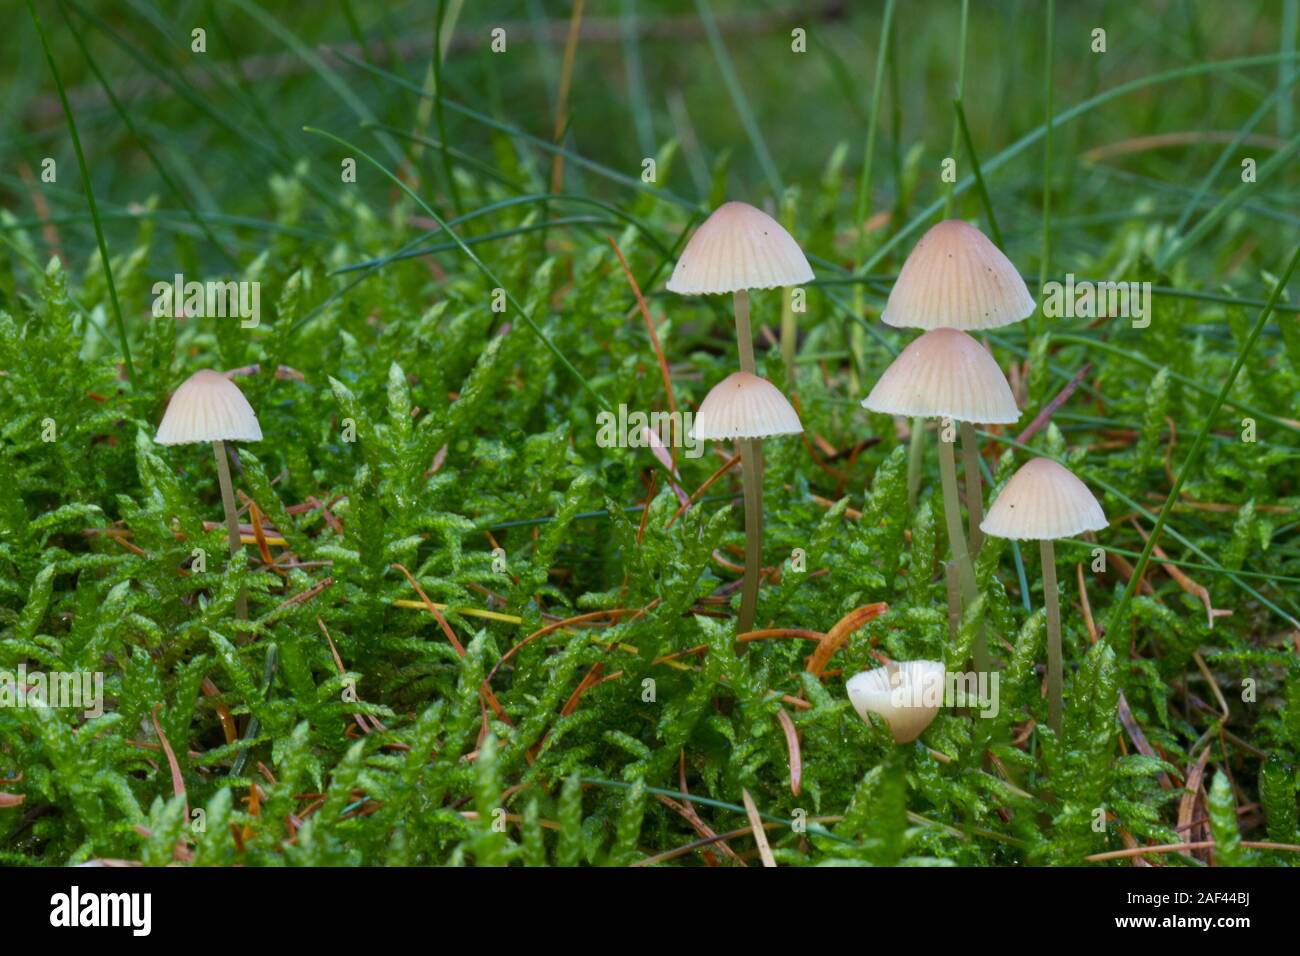 Gruppe von Melken Motorhauben oder Milch - drop Mycena, kleine ungenießbare Pilze, einer von ihnen gebrochen, in Moss Stockfoto